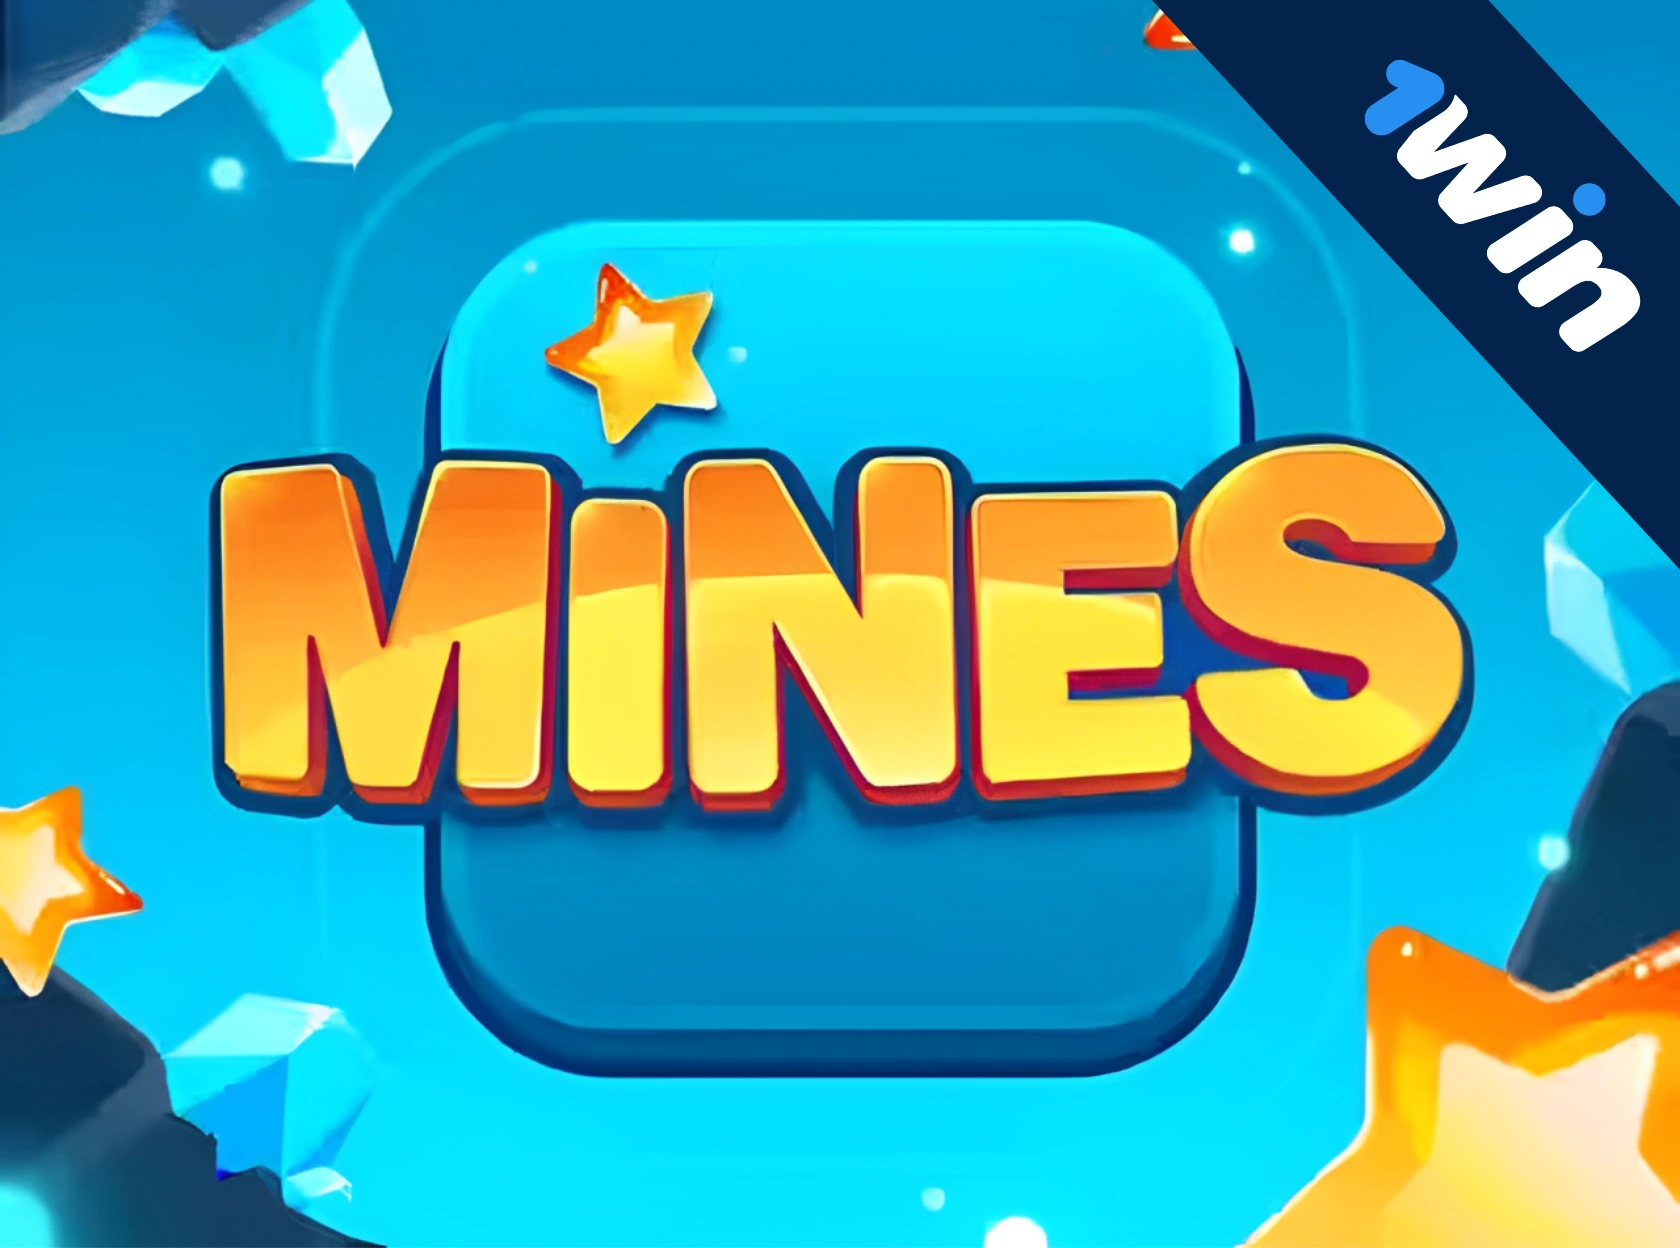 1win Mines - ақша үшін Minesweeper ойнаңыз!